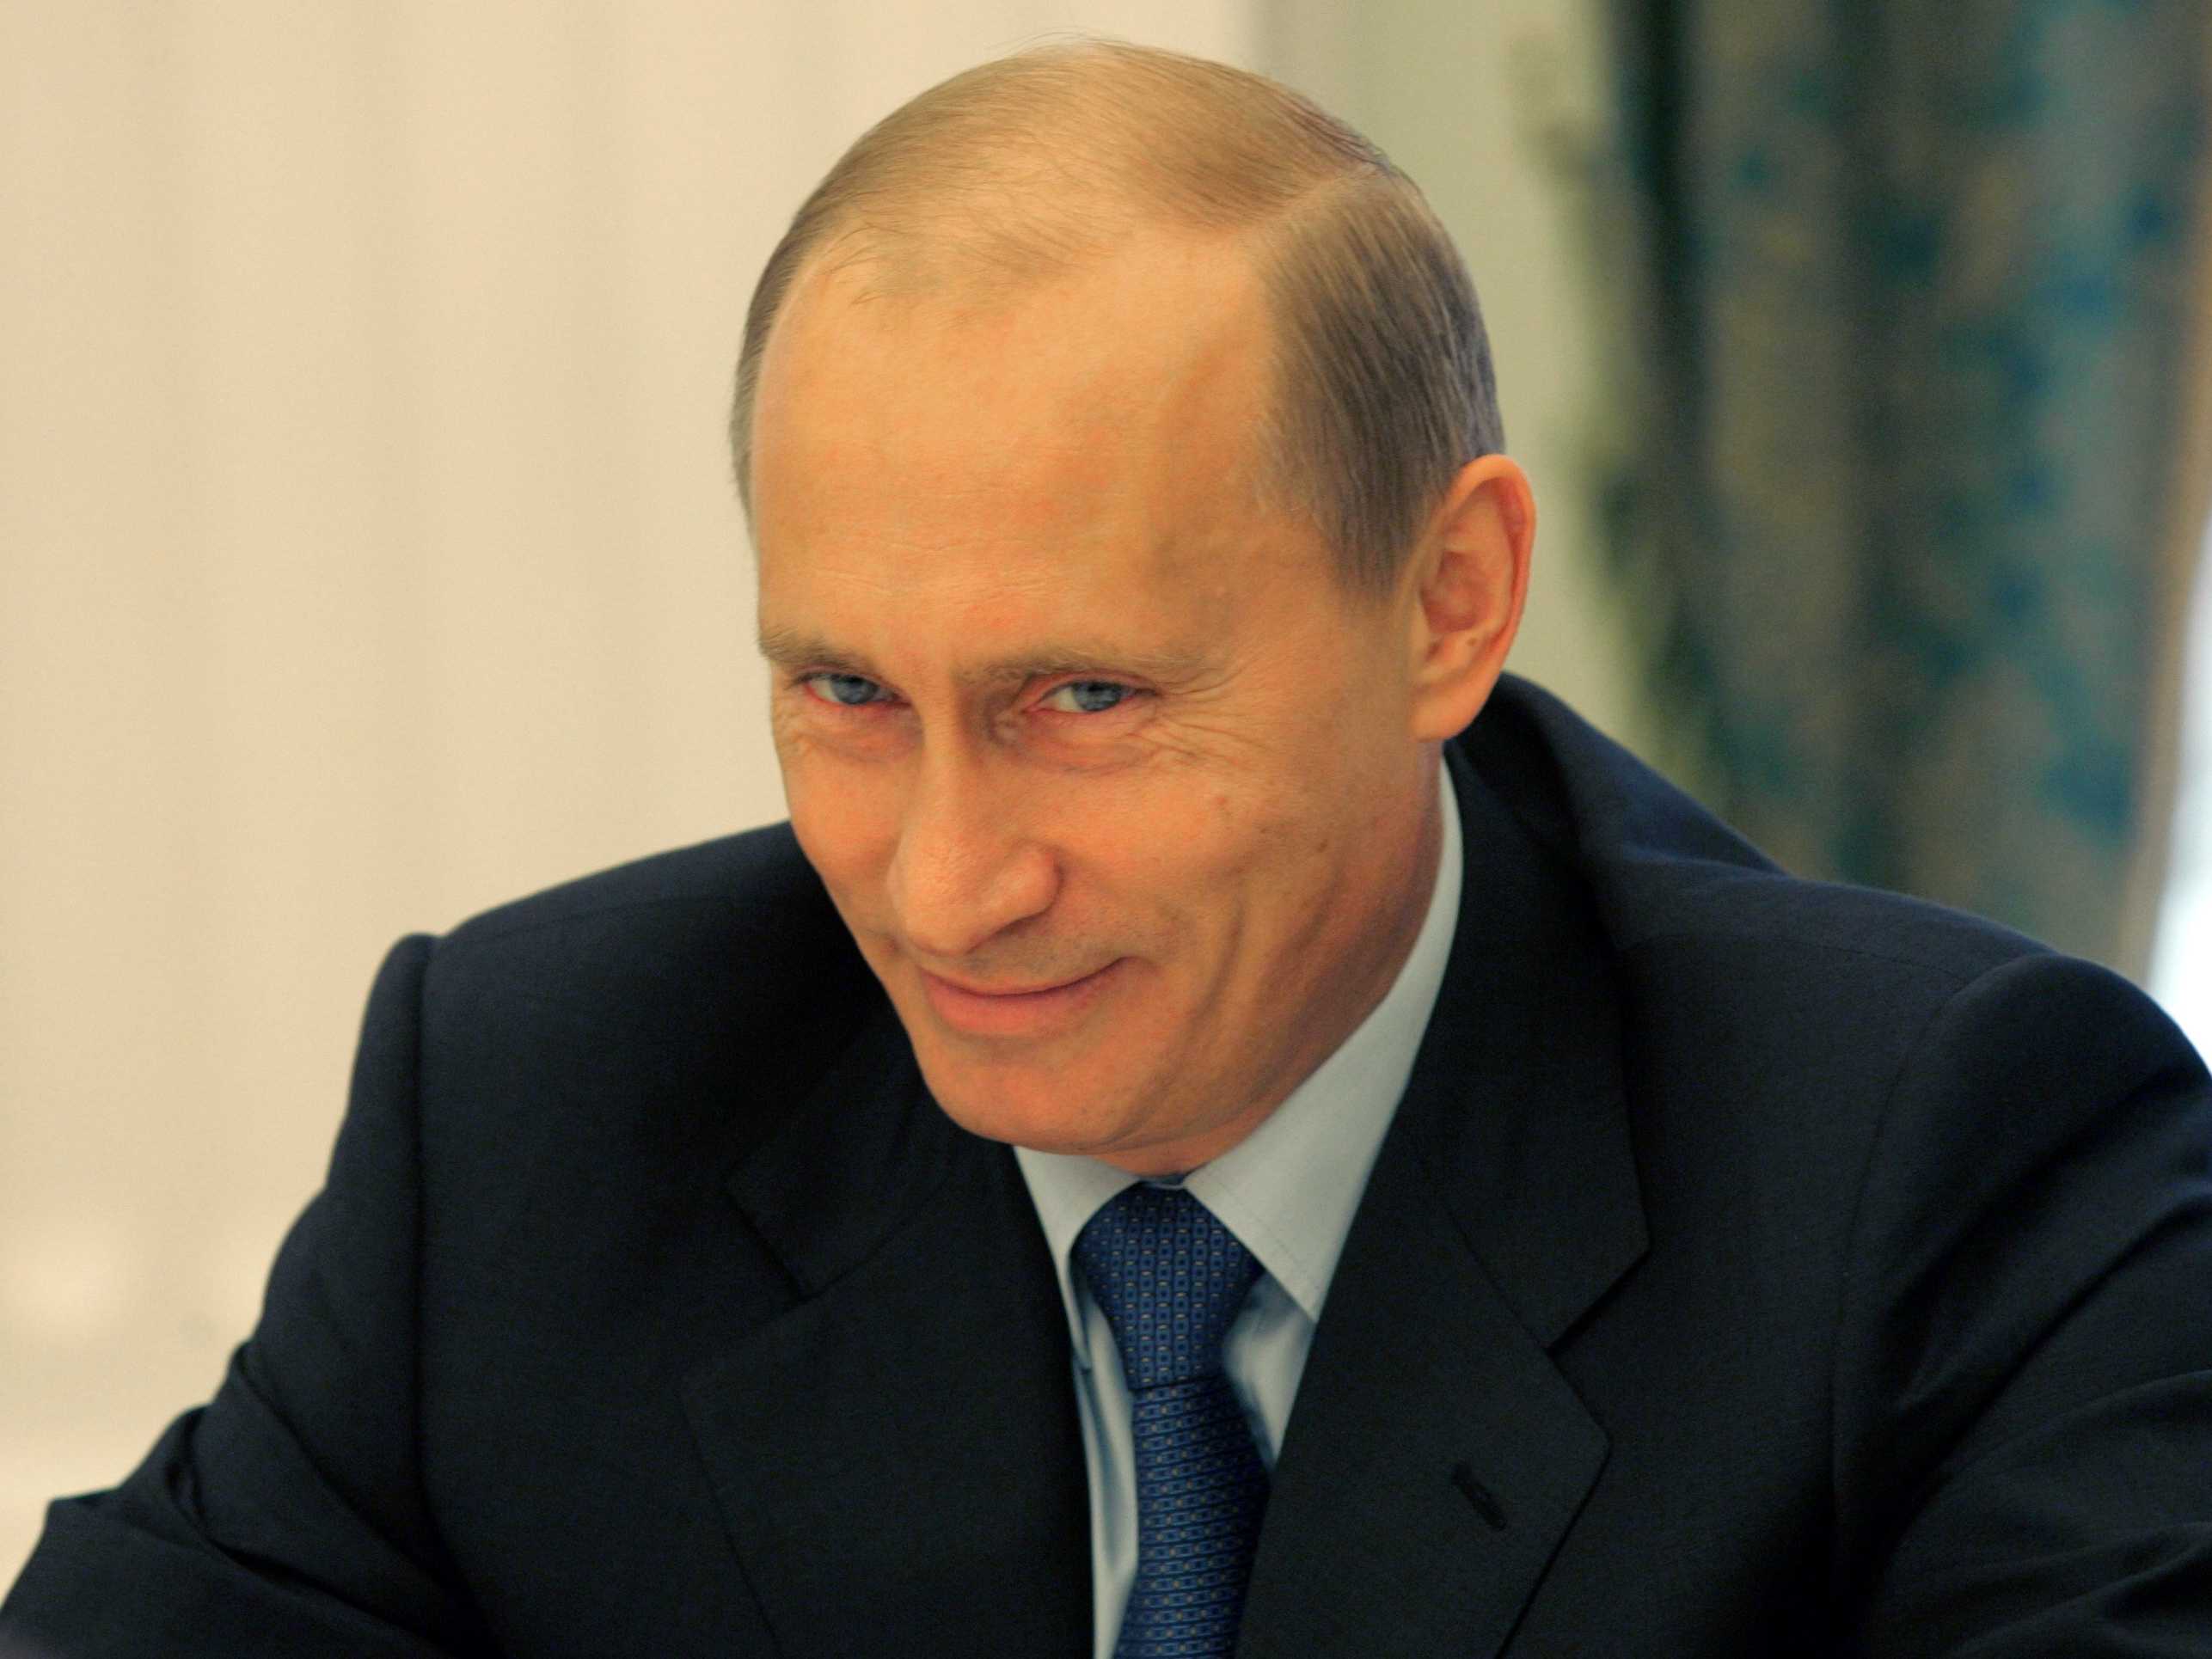 High Res Vladimir Putin Wallpaper Image